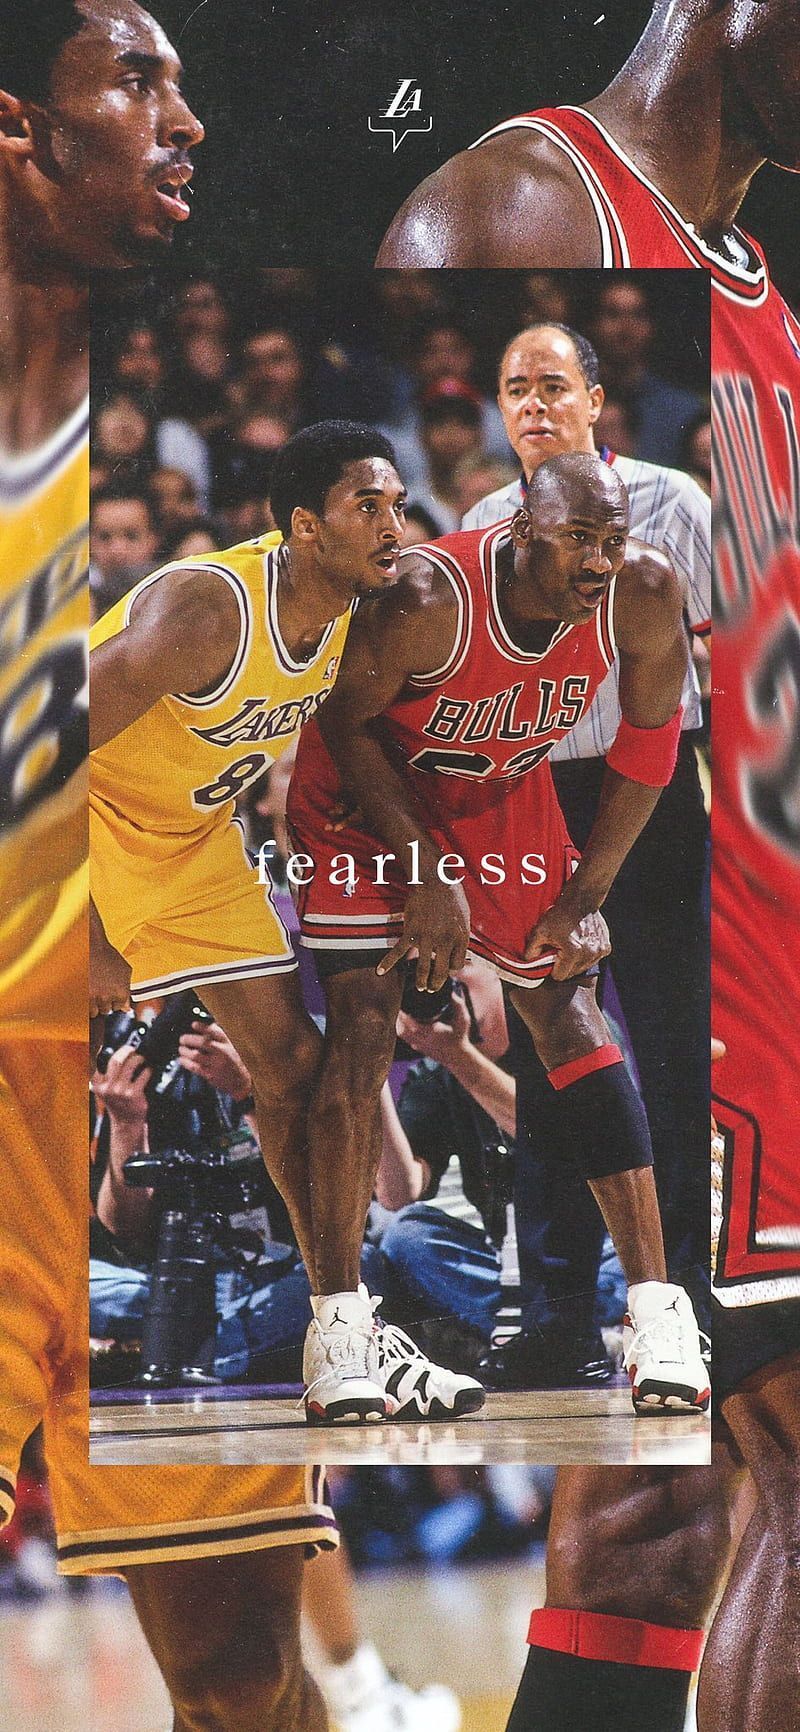 Iphone wallpaper of Michael Jordan and Kobe Bryant facing each other - Los Angeles Lakers, Michael Jordan